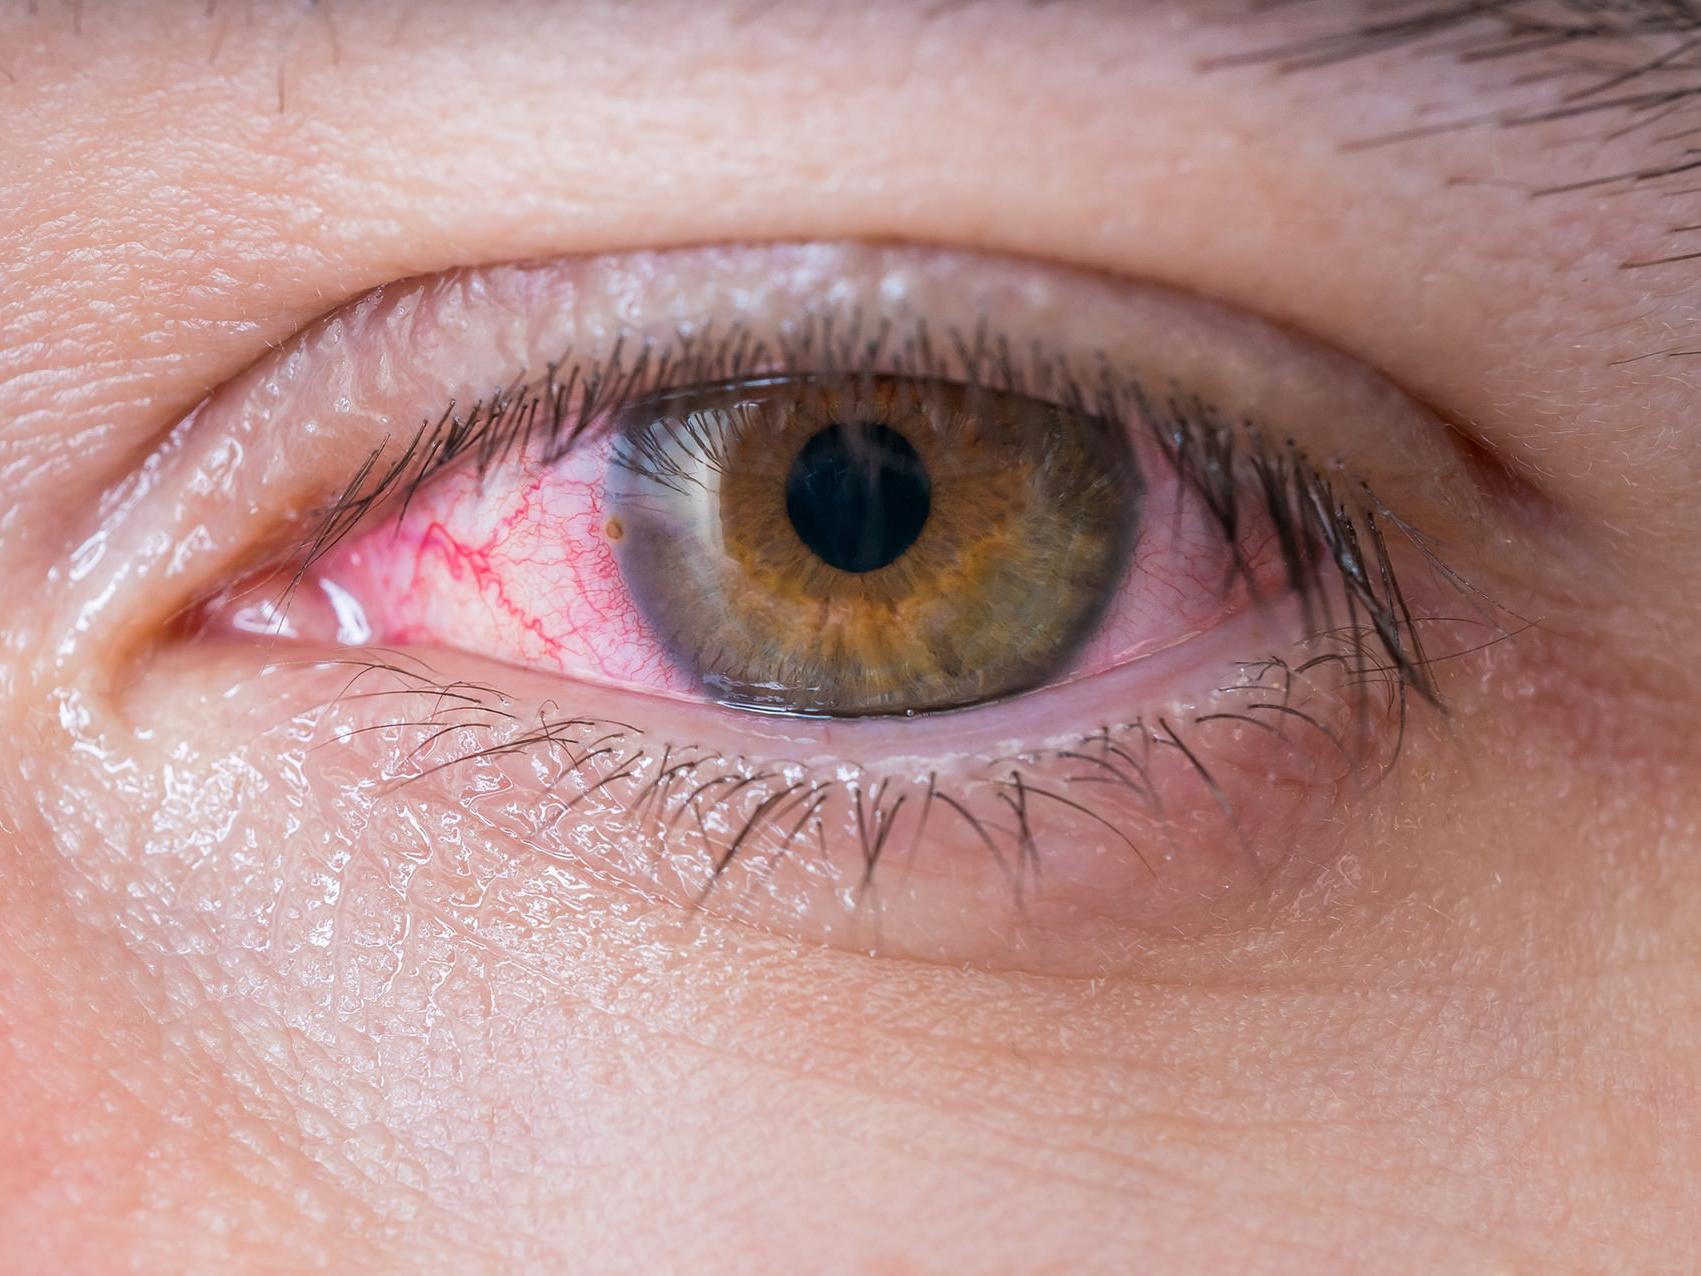 該圖片顯示了一隻不健康眼睛的特寫，說明了潛在的眼睛危害的外觀。 